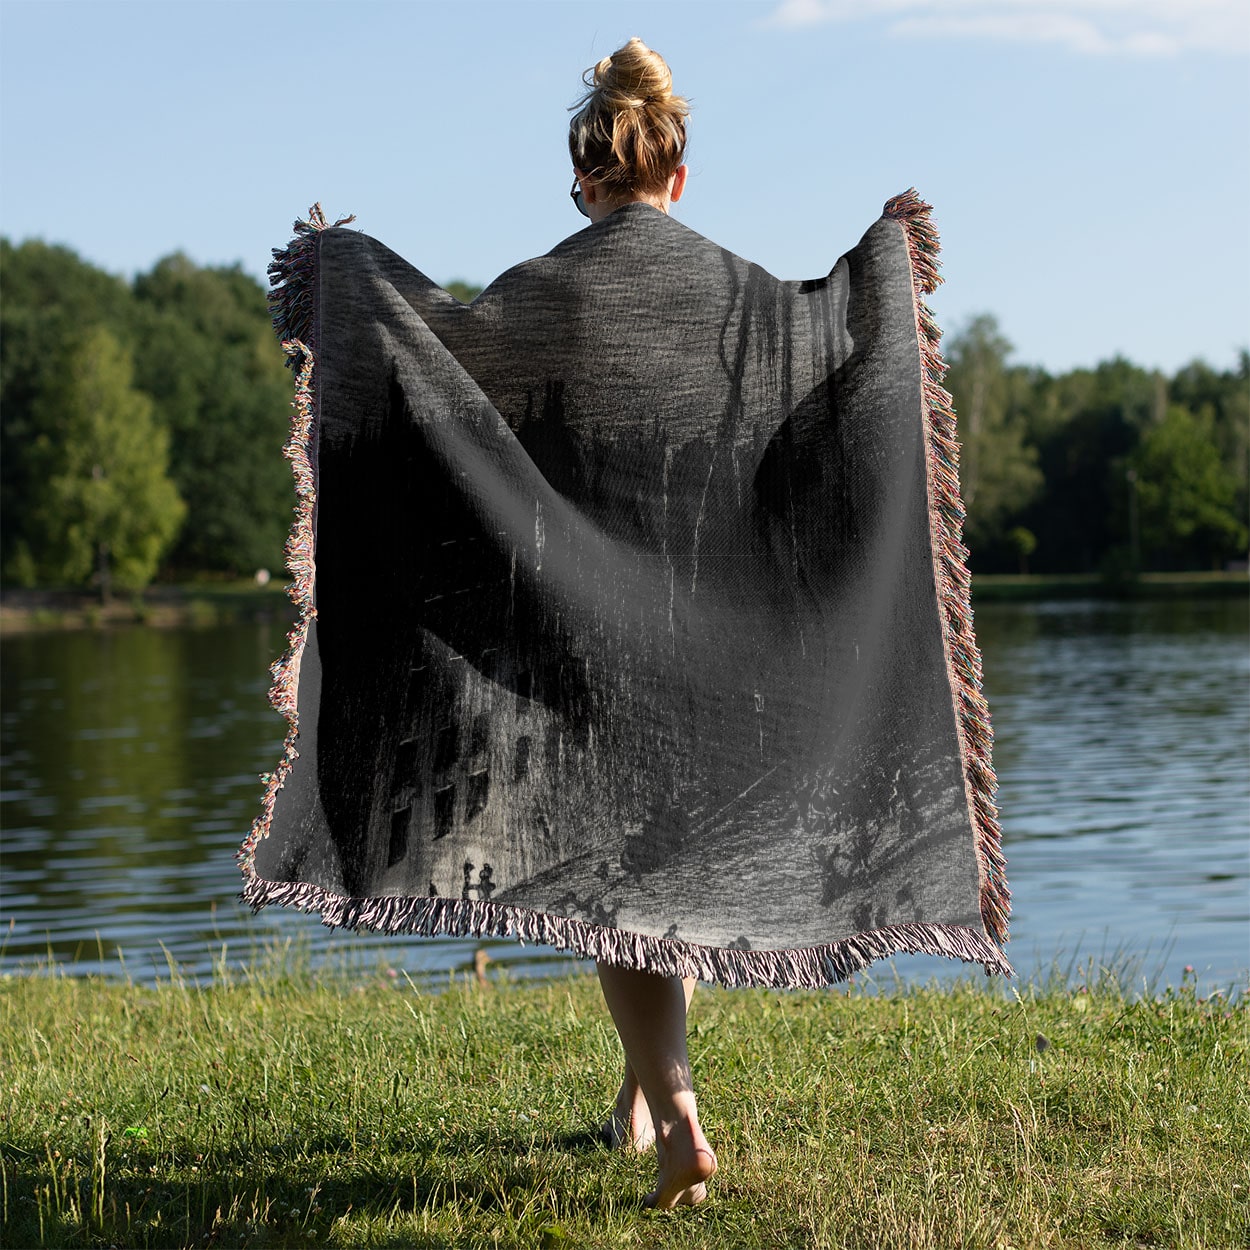 Funny Alien Woven Blanket Held on a Woman's Back Outside